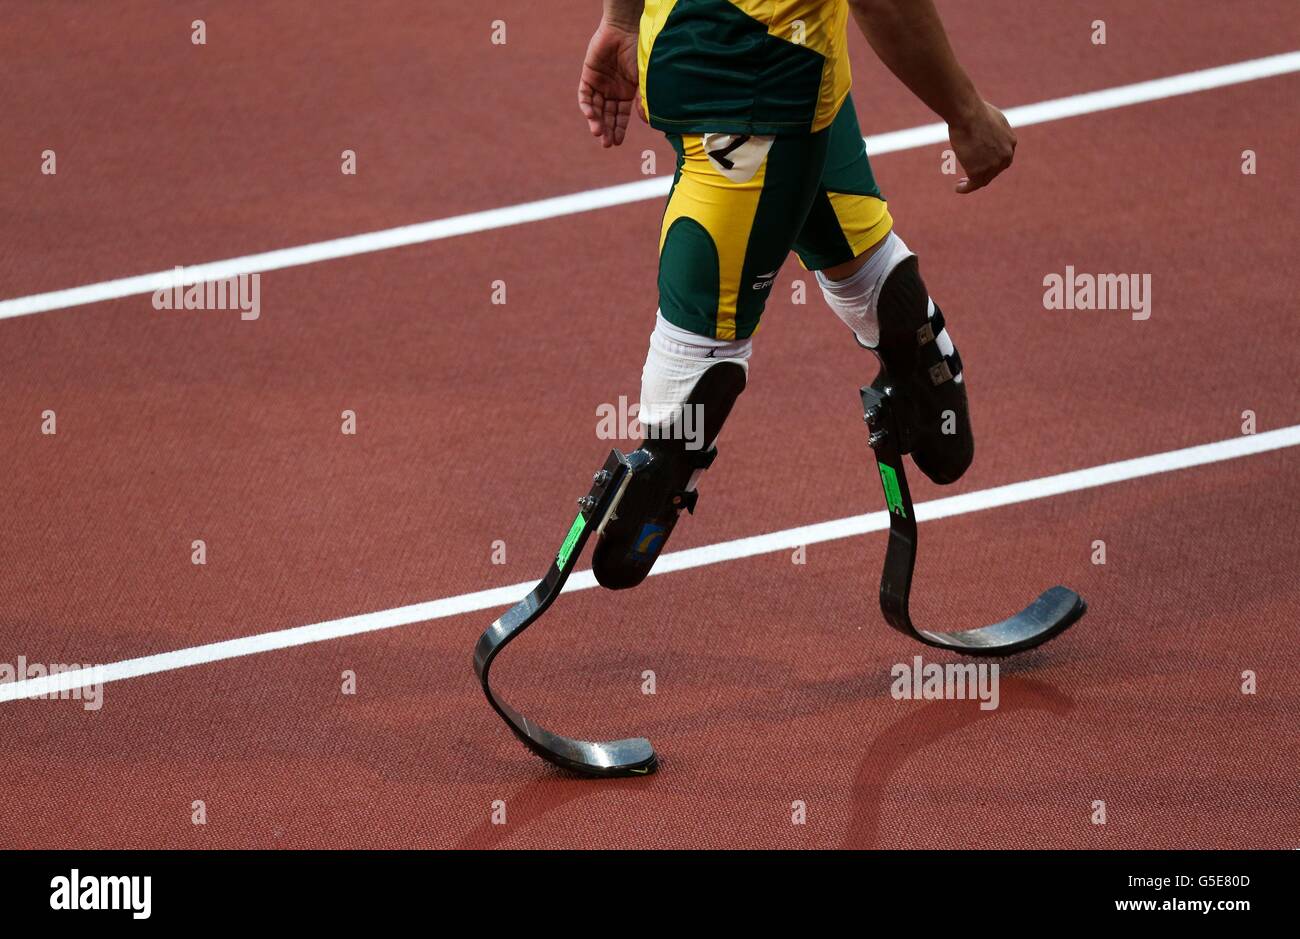 Eine Nahaufnahme von Südafrikas Oscar Pistorius Prothesenklingen, nachdem er seine 100m T44 Hitze im Olympiastadion in London beendet hatte. Stockfoto